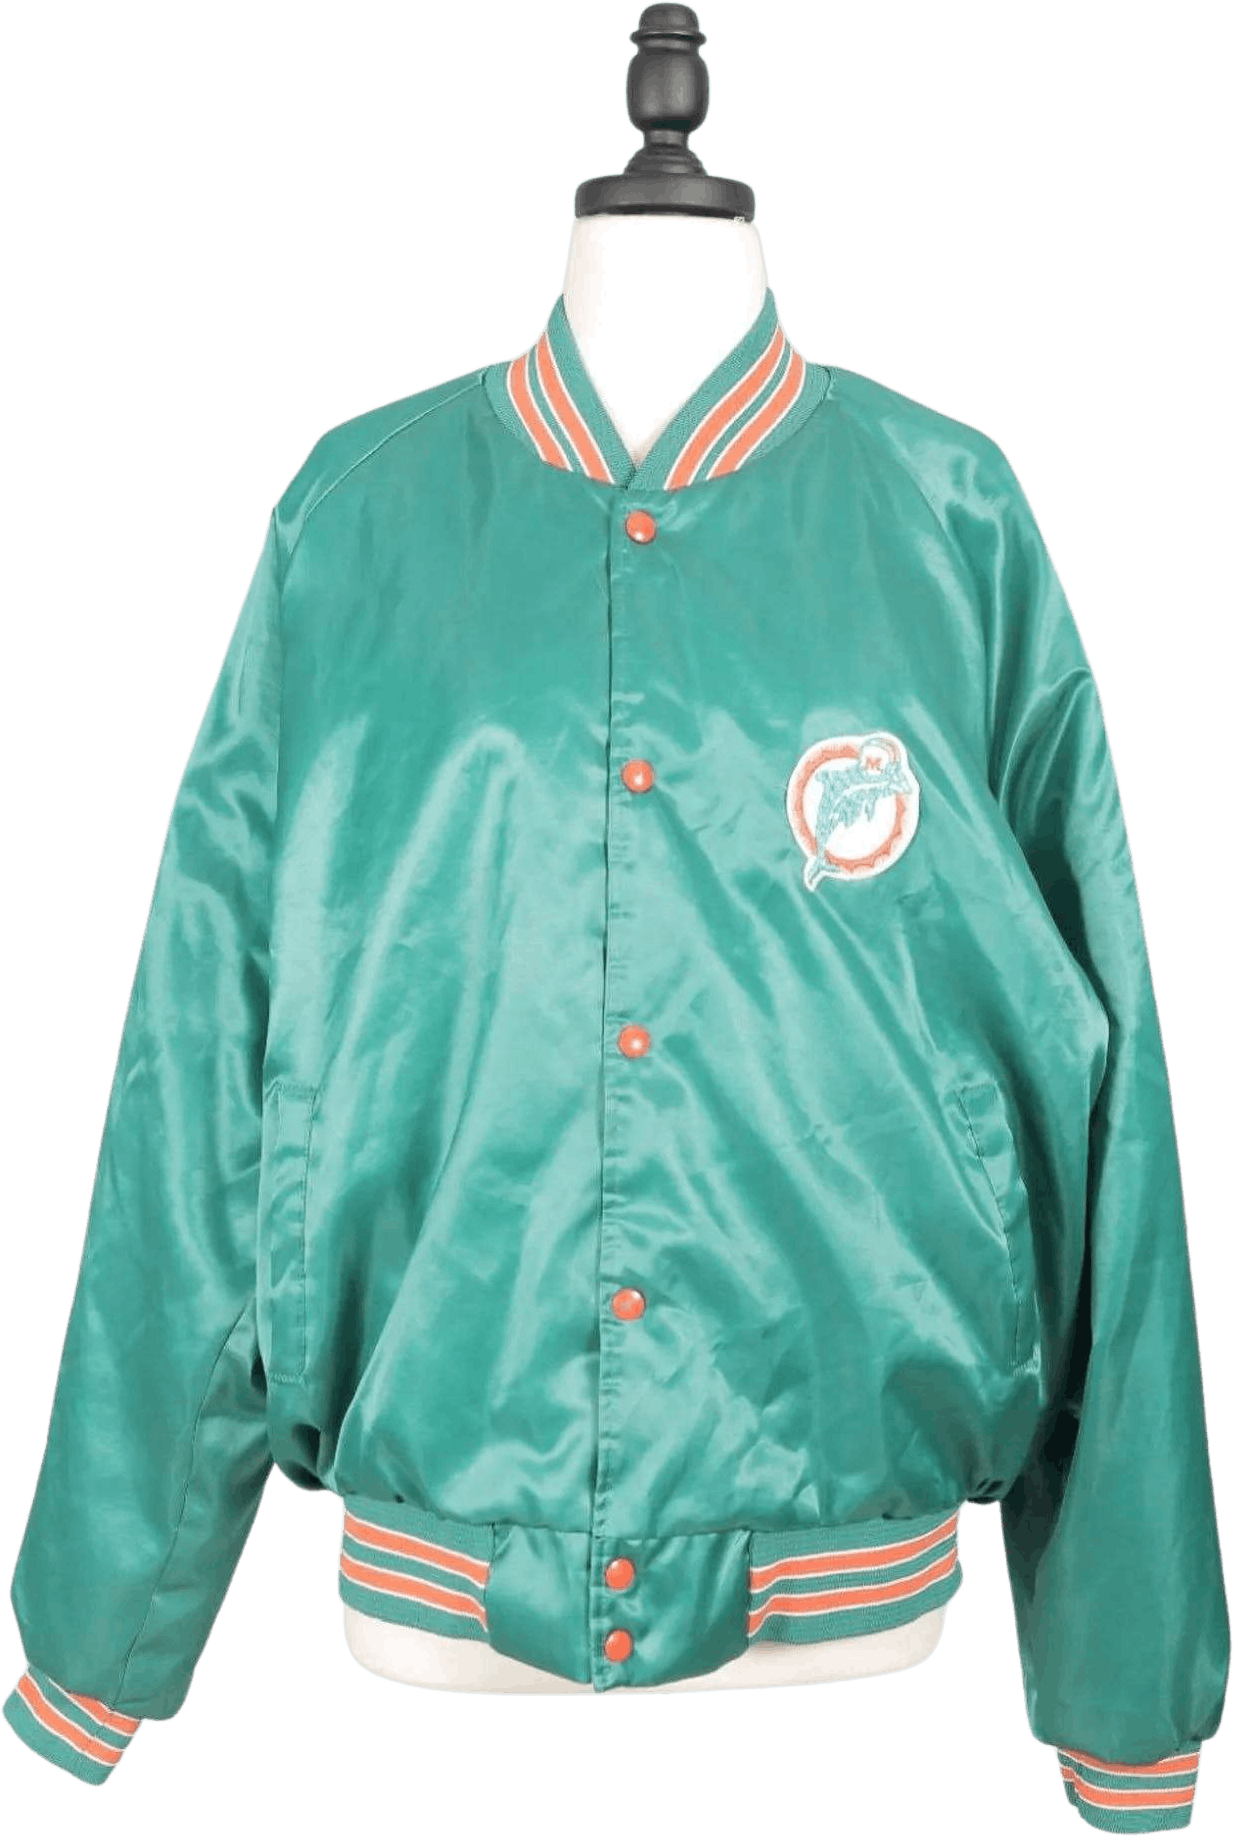 Miami Dolphins 80s Bomber Jacket